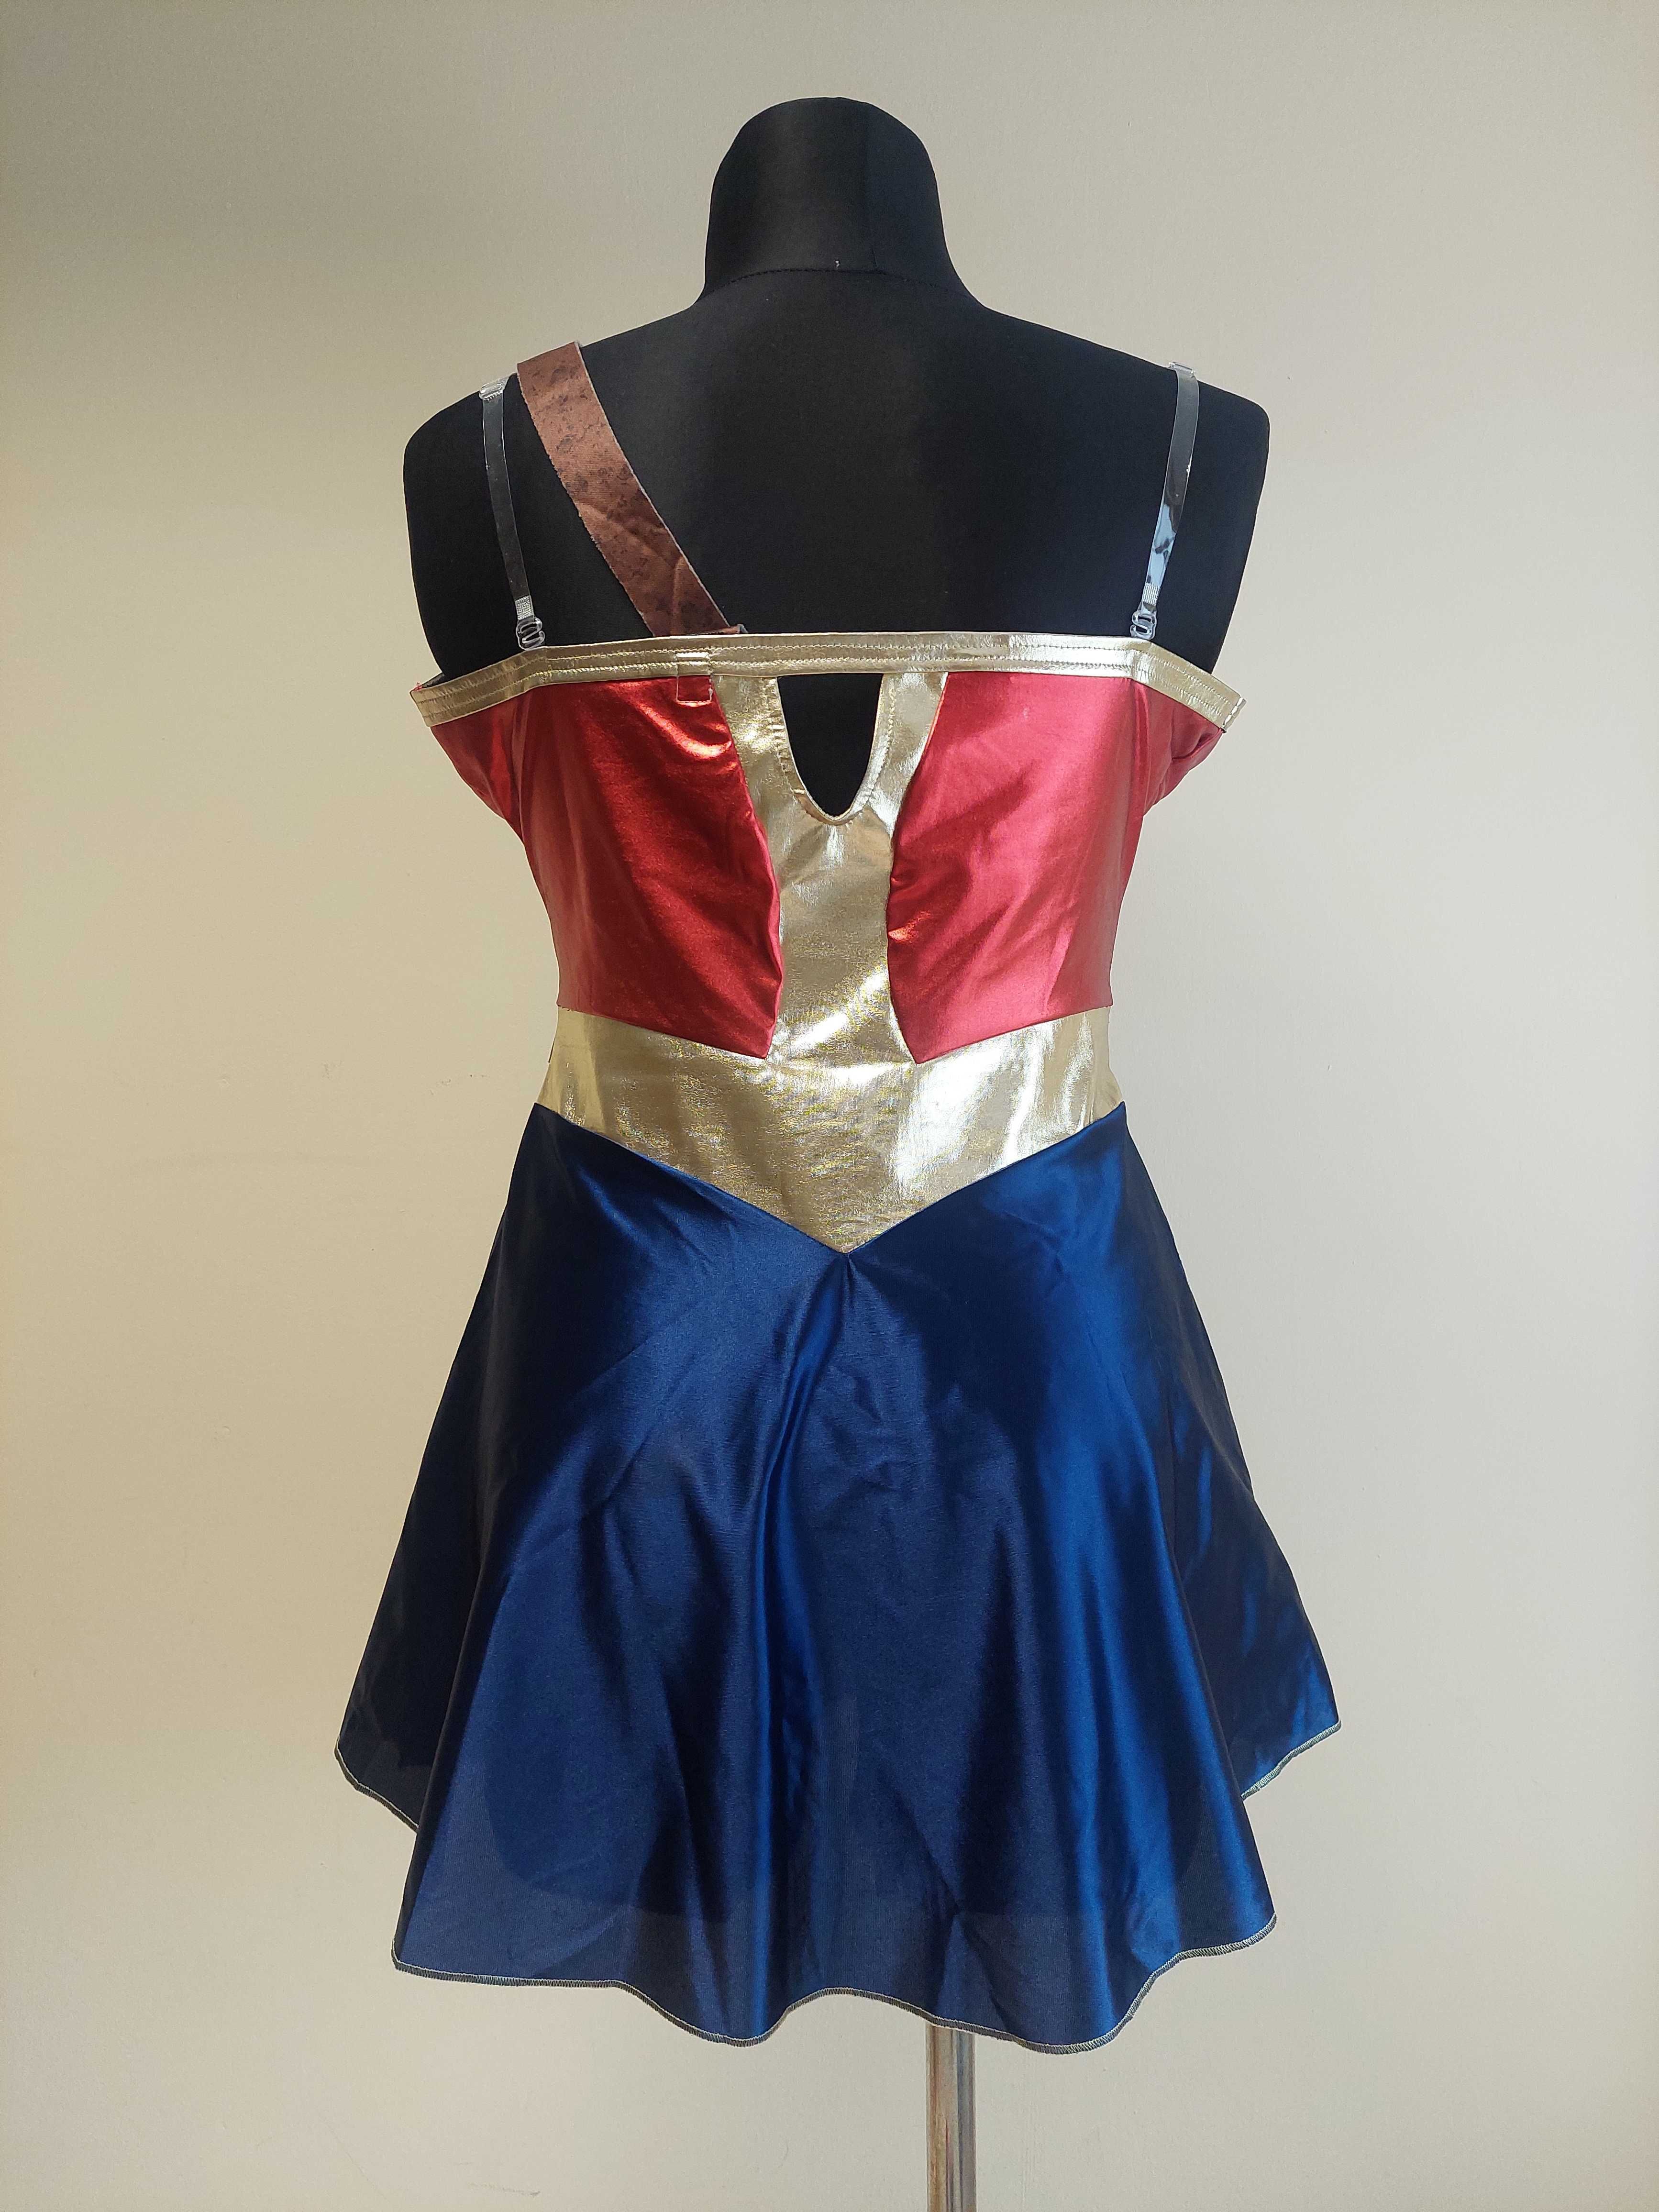 Rubies Kostium Wonder Woman strój przebranie rozmiar S